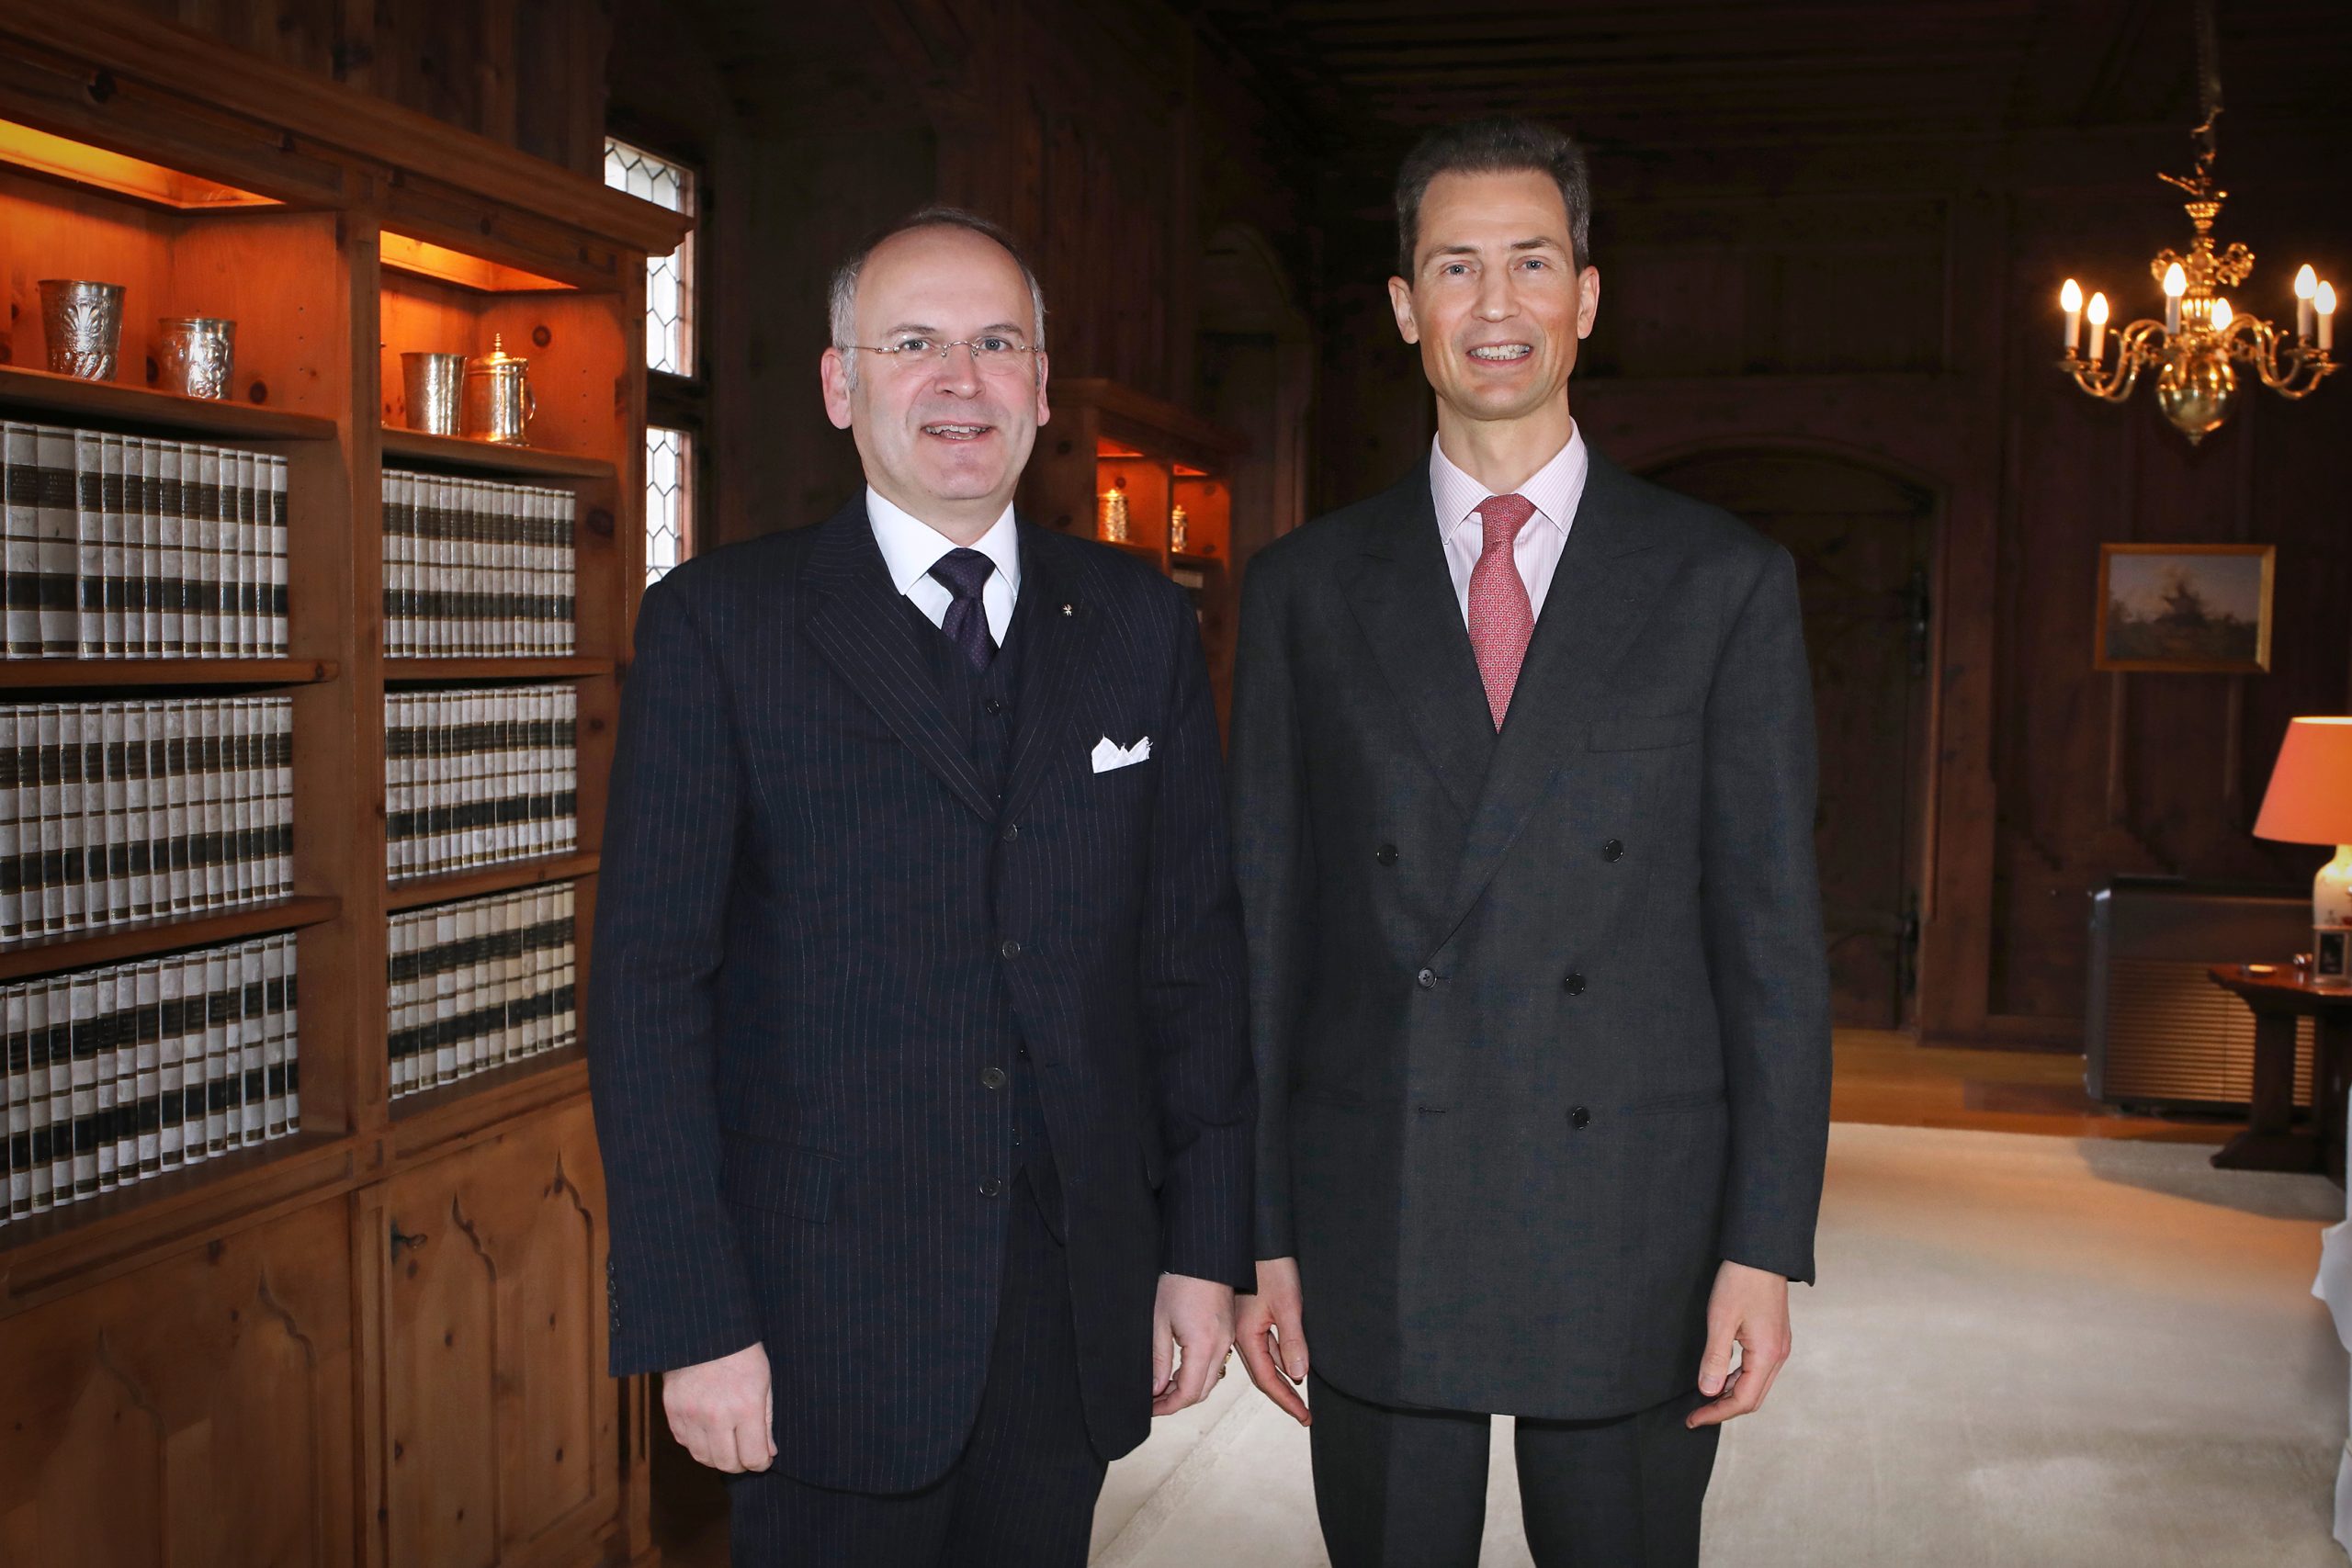 Der neue Botschafter des Malteserordens, Klaus Schweinsberg, überreichte dem Erbprinzen Alois von und zu Liechtenstein sein Beglaubigungsschreiben